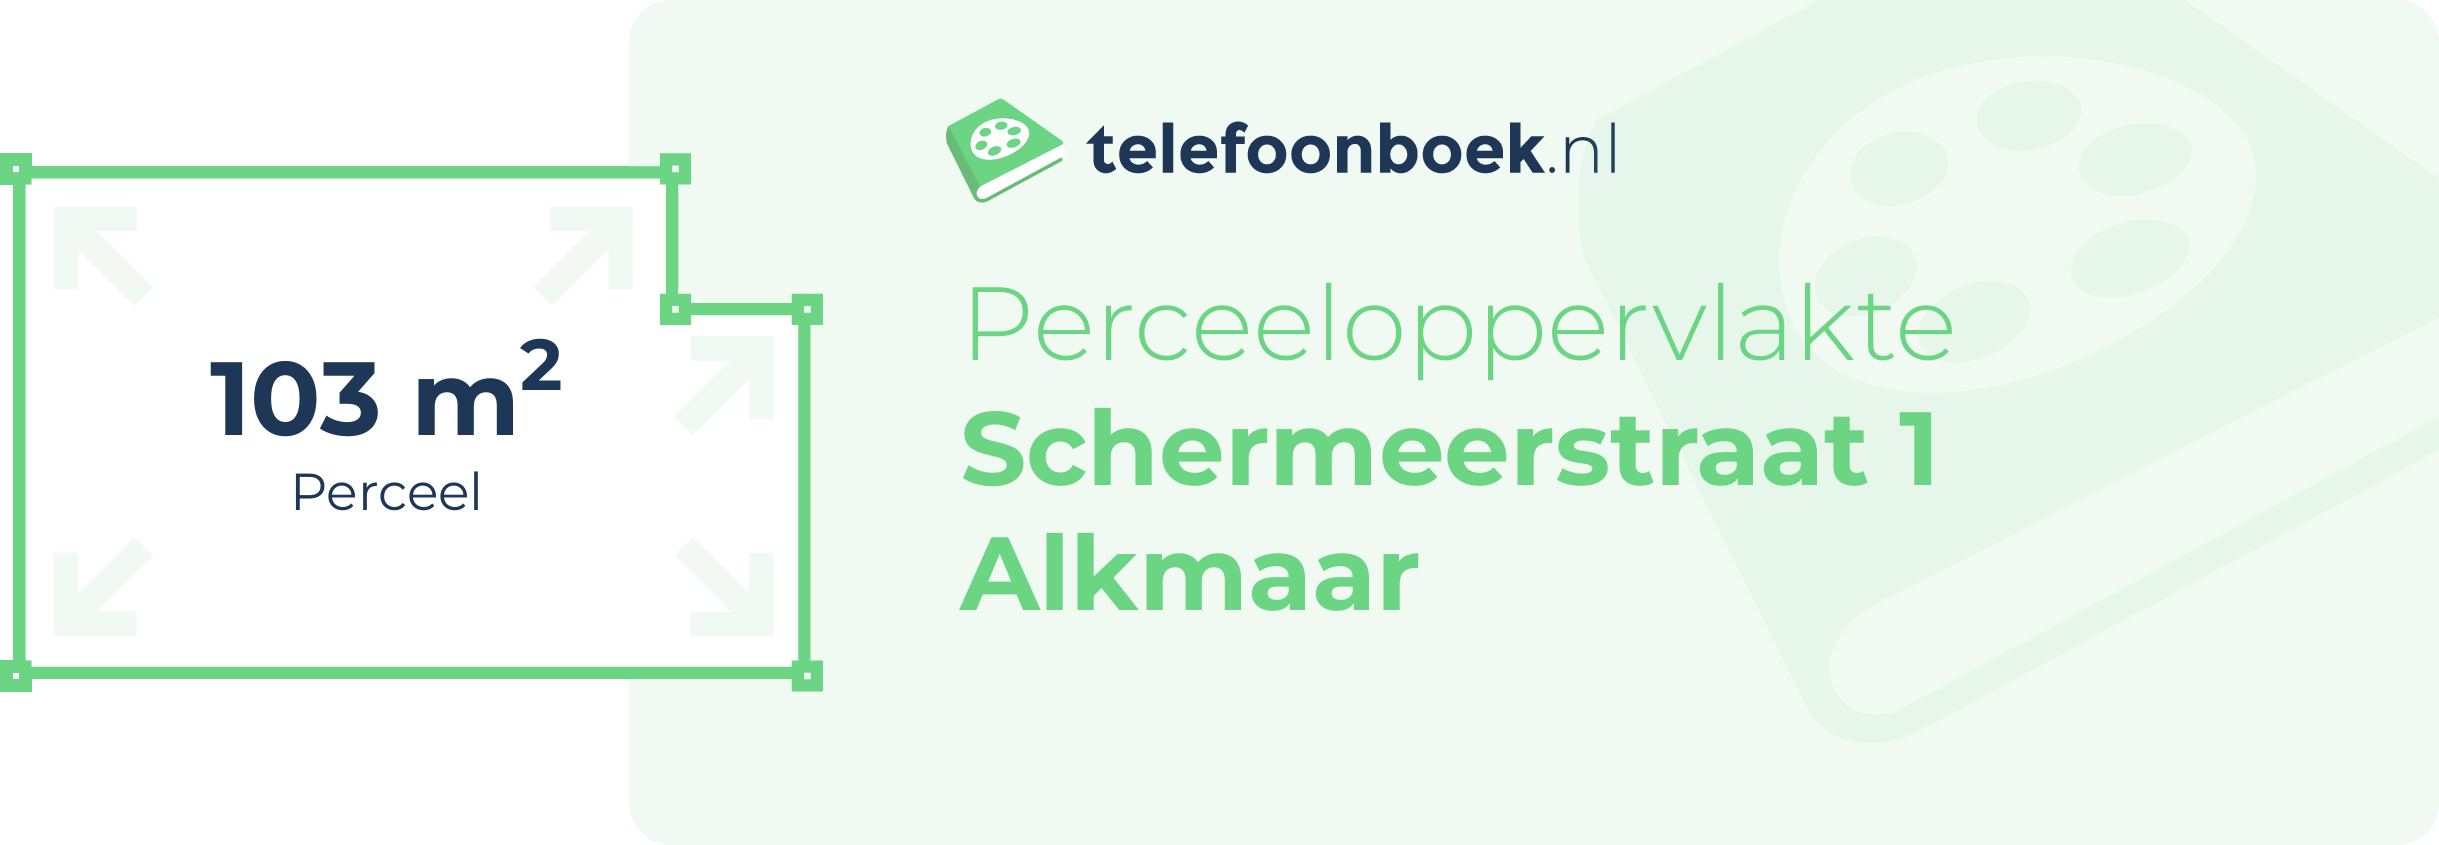 Perceeloppervlakte Schermeerstraat 1 Alkmaar